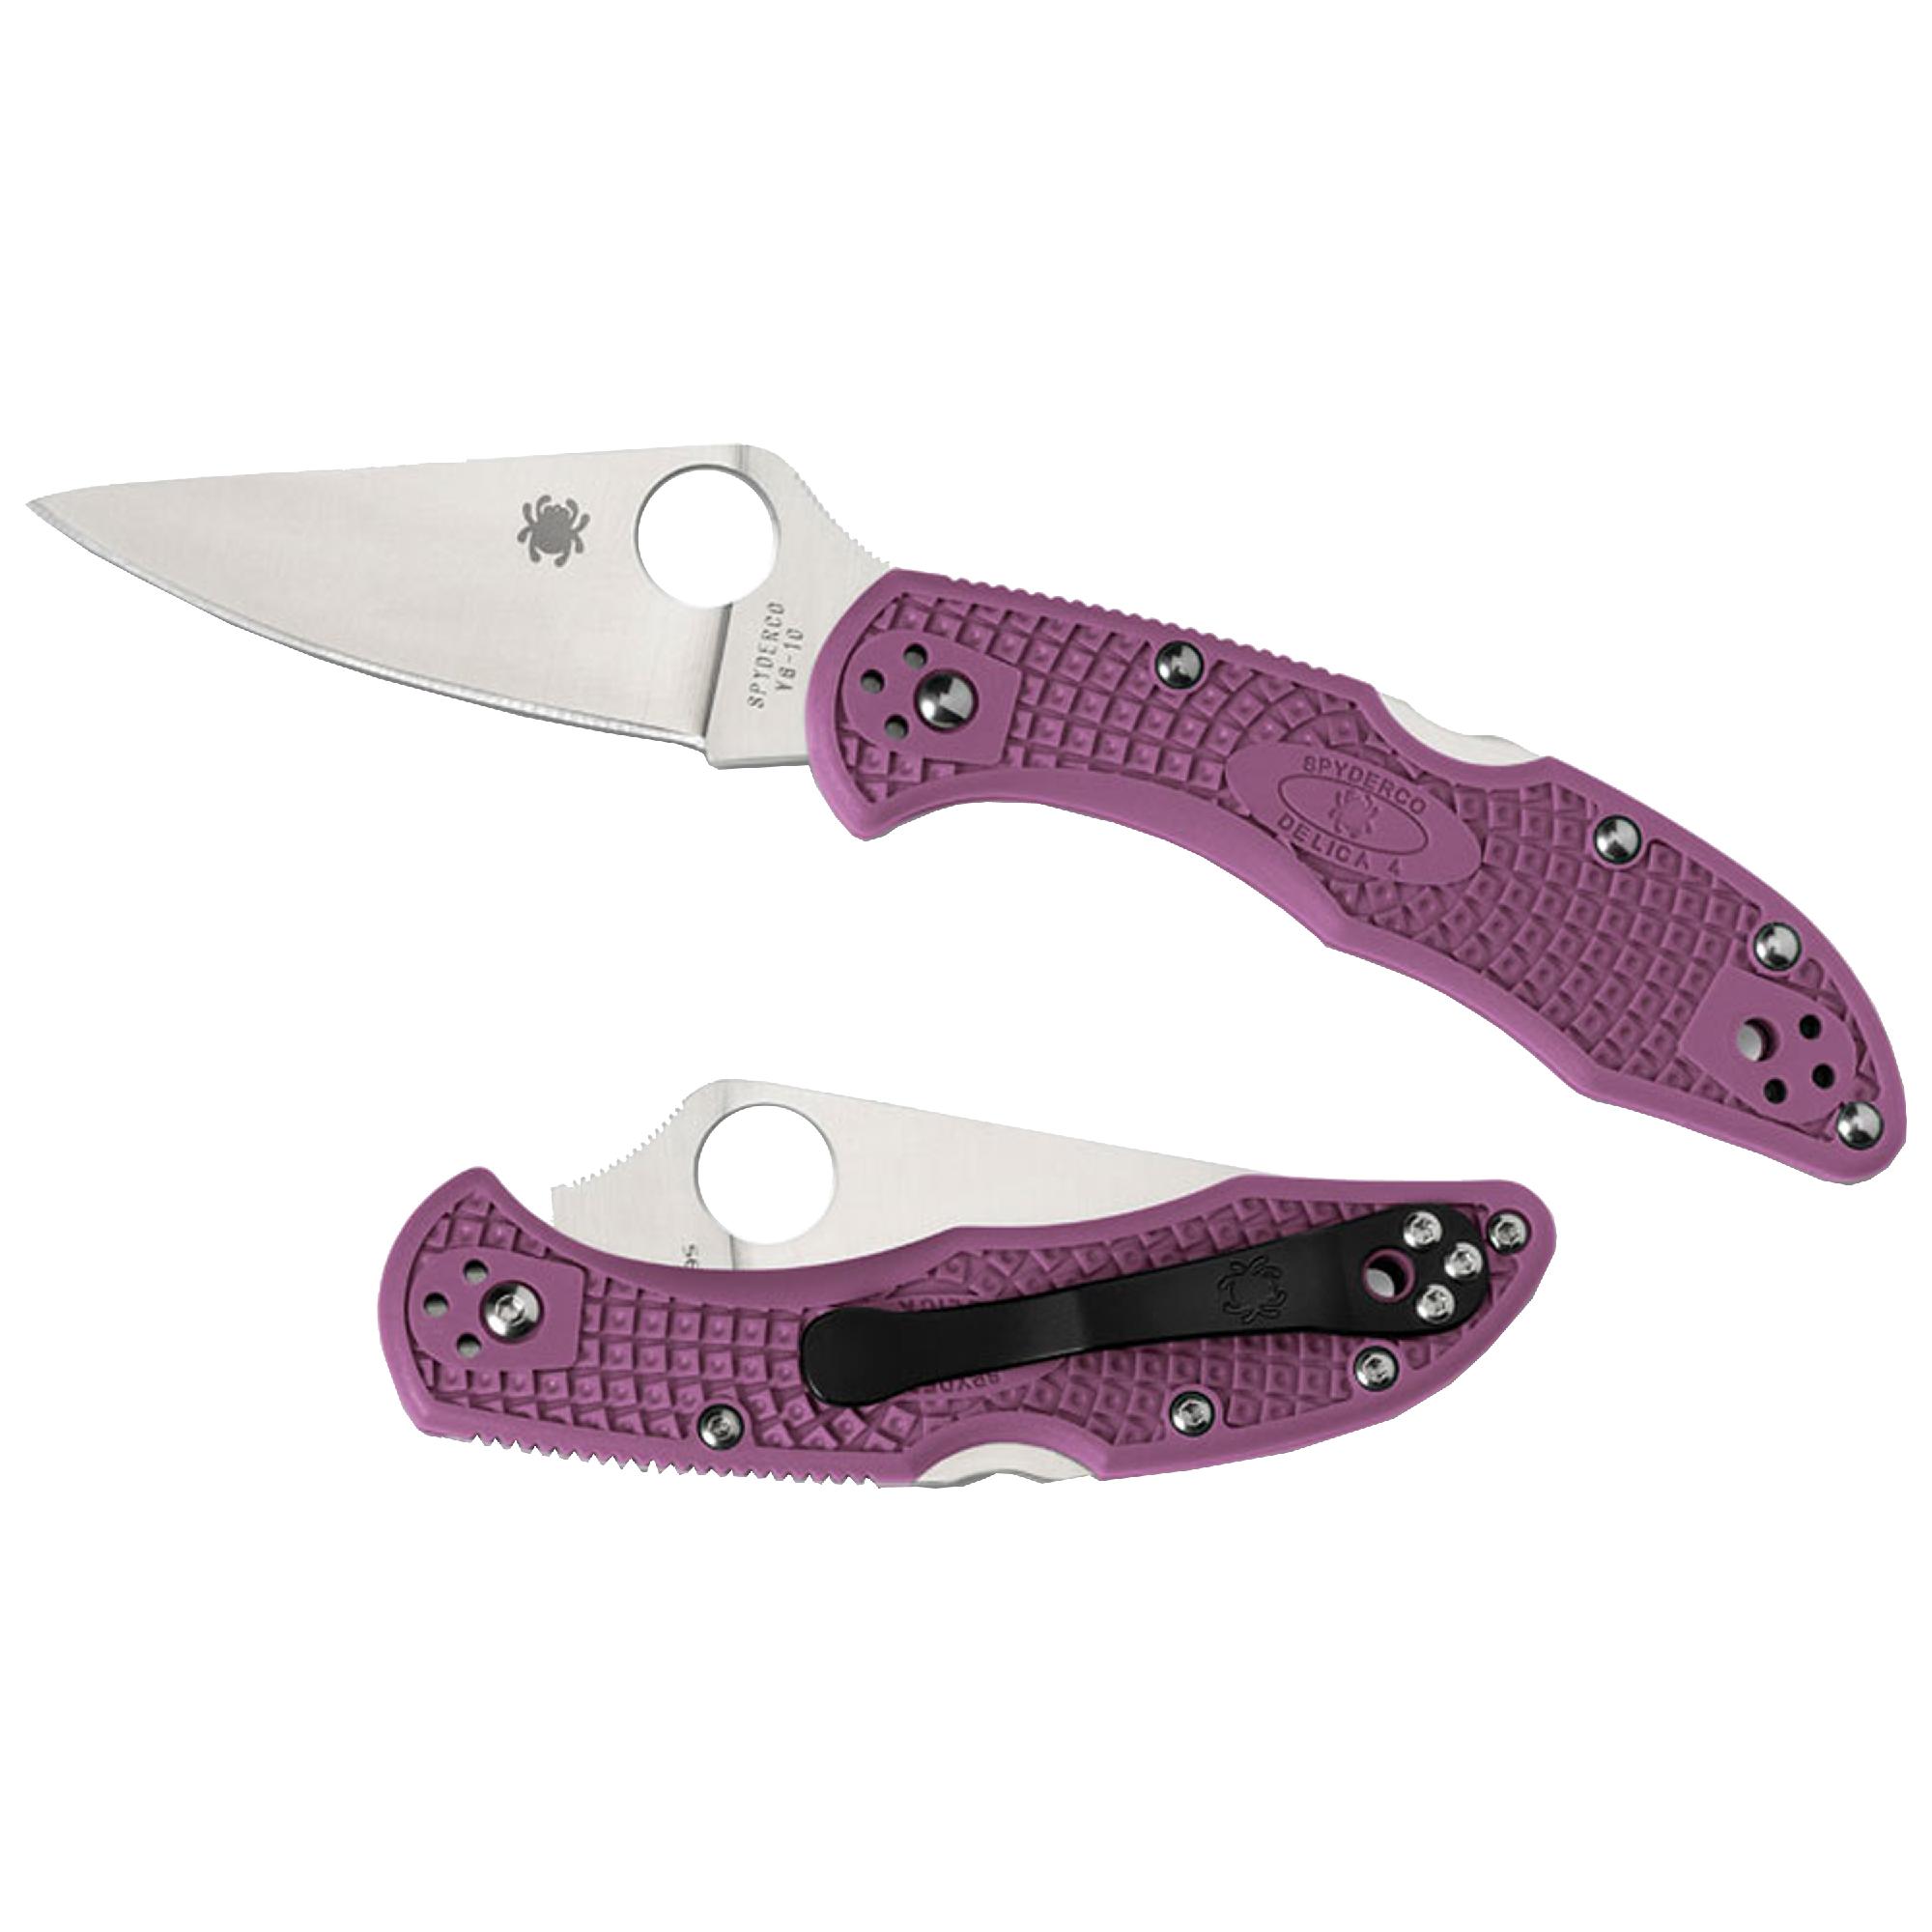 Spyderco Delica Lightweight Purple Knife